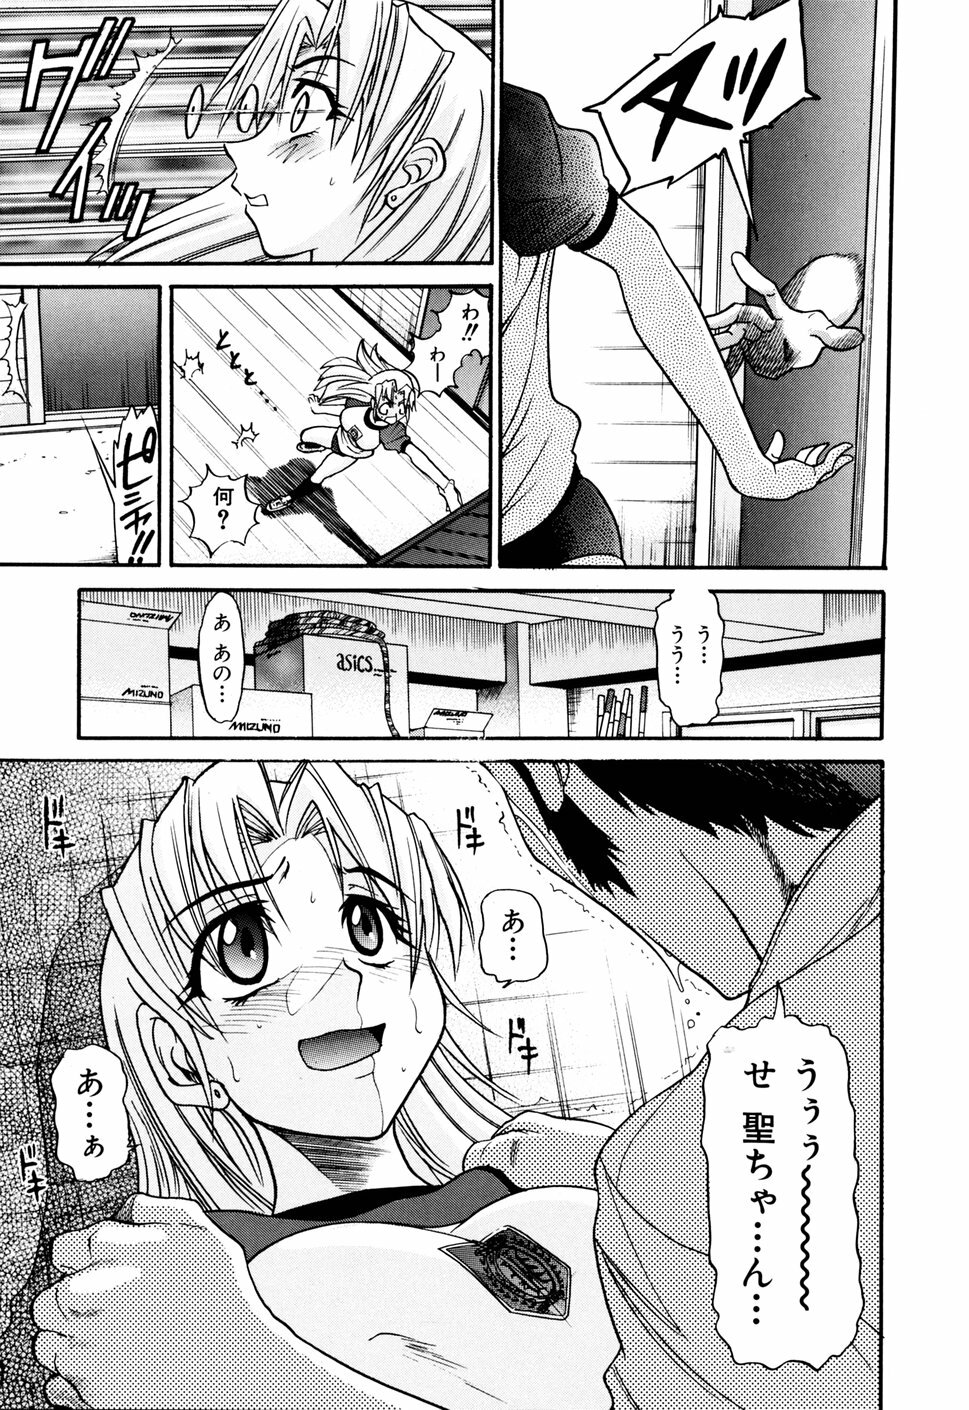 [DISTANCE] Ochiru Tenshi Vol. 1 page 45 full